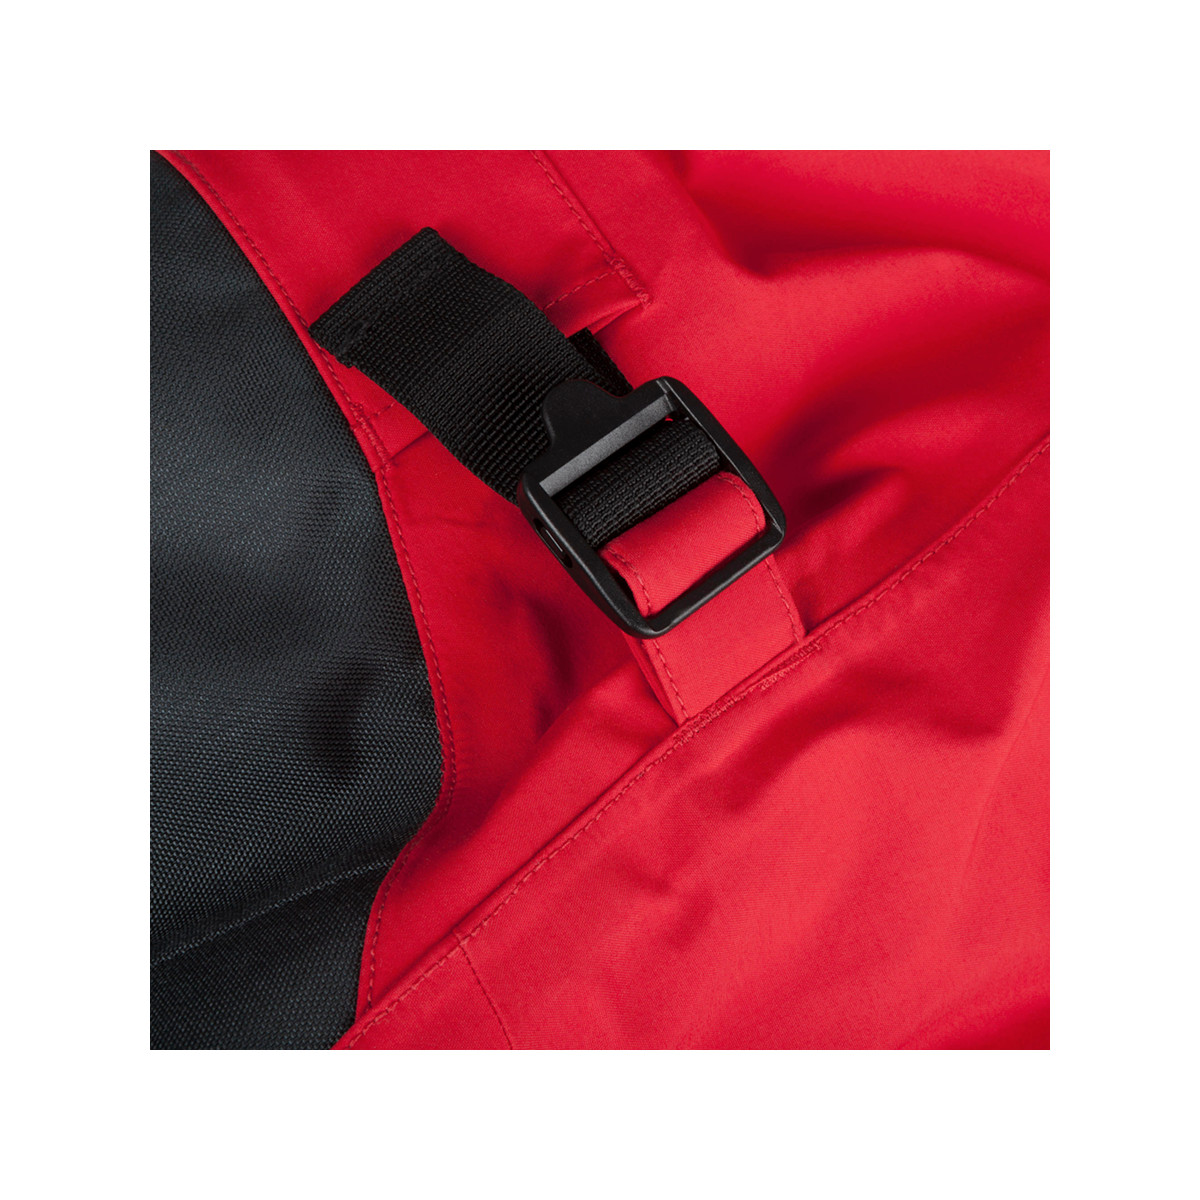 Musto MPX Gore-Tex Pro Offshore pantalon de voile homme rouge, taille XL